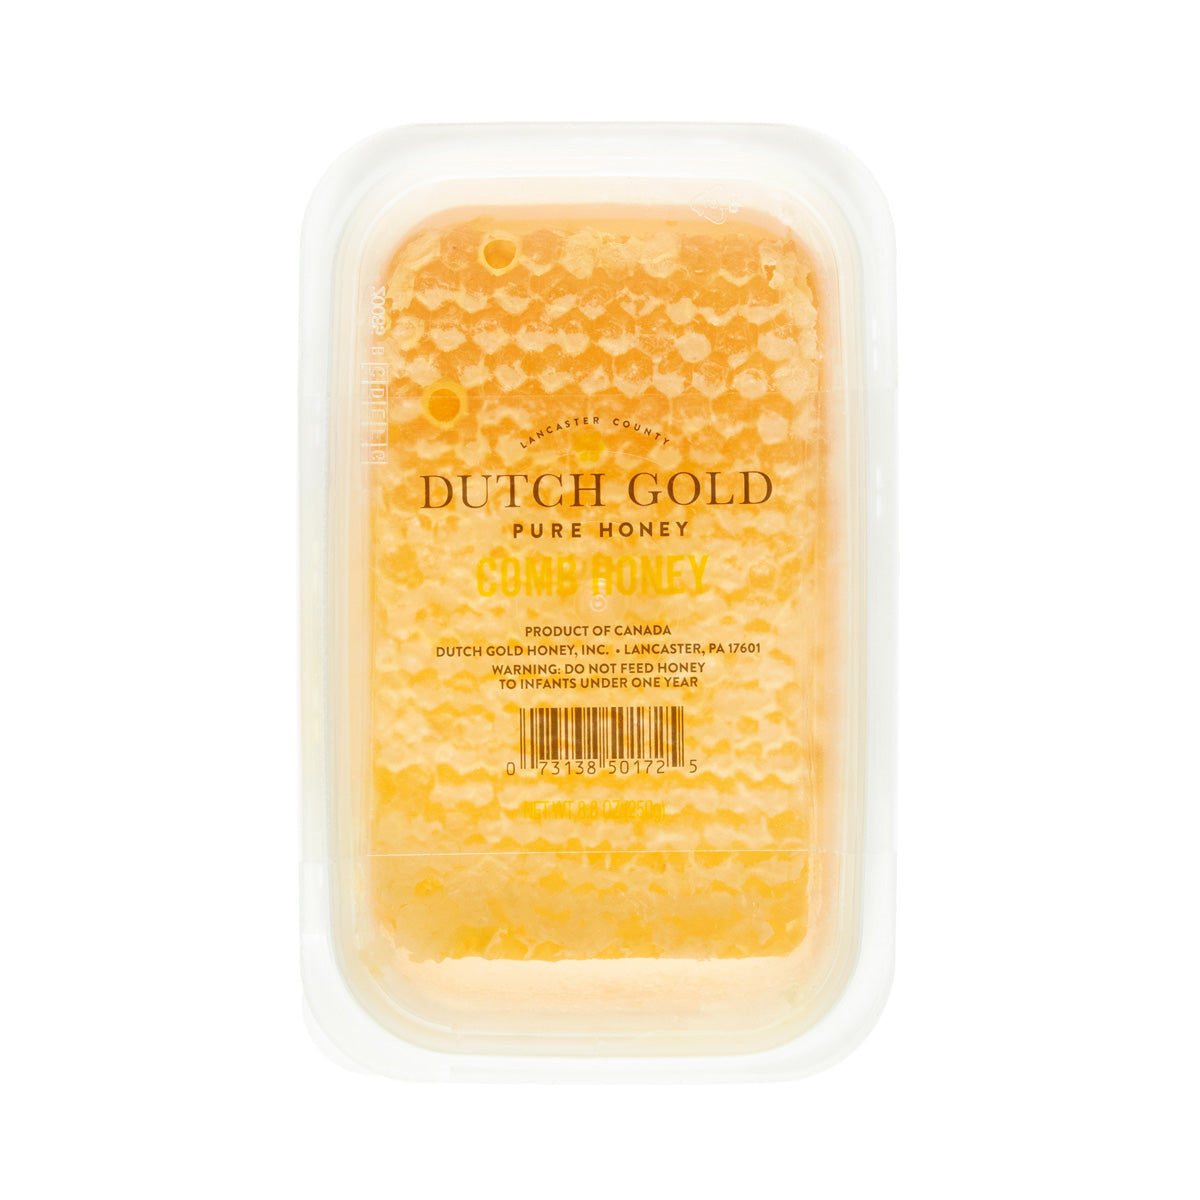 Dutch Gold Honey Comb